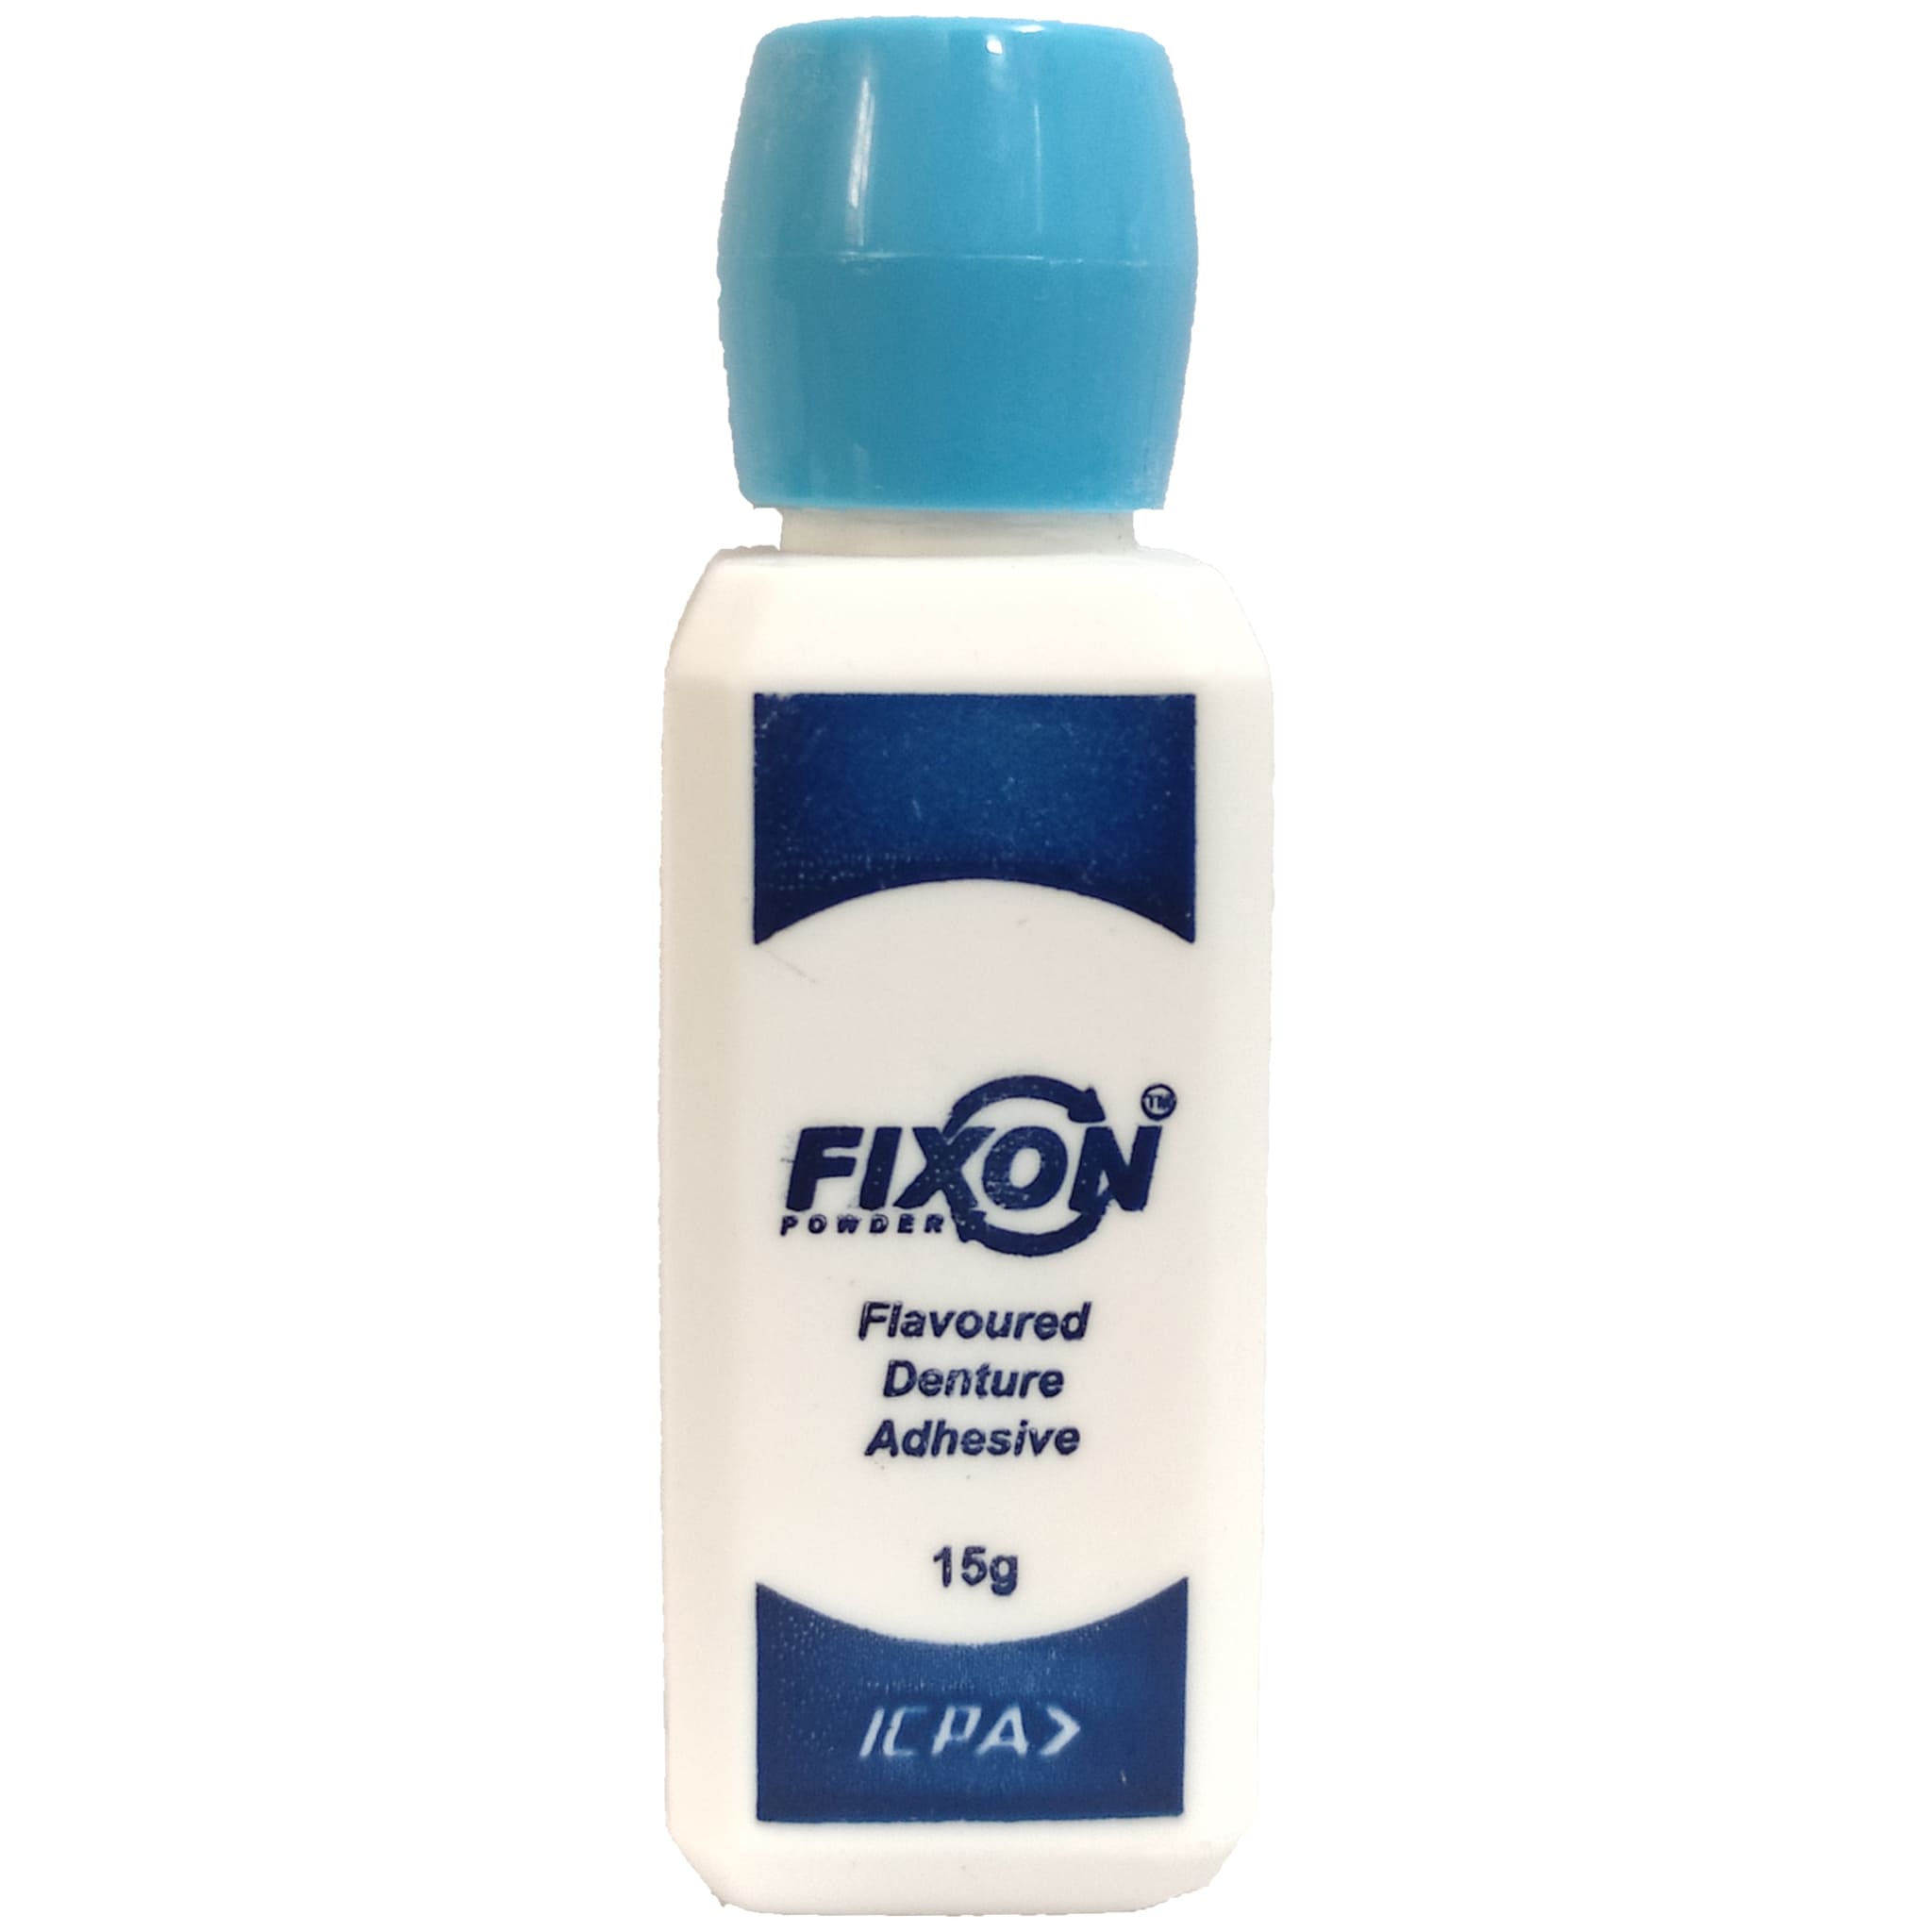 ICPA Fixon Powder 15g Denture Adhesive